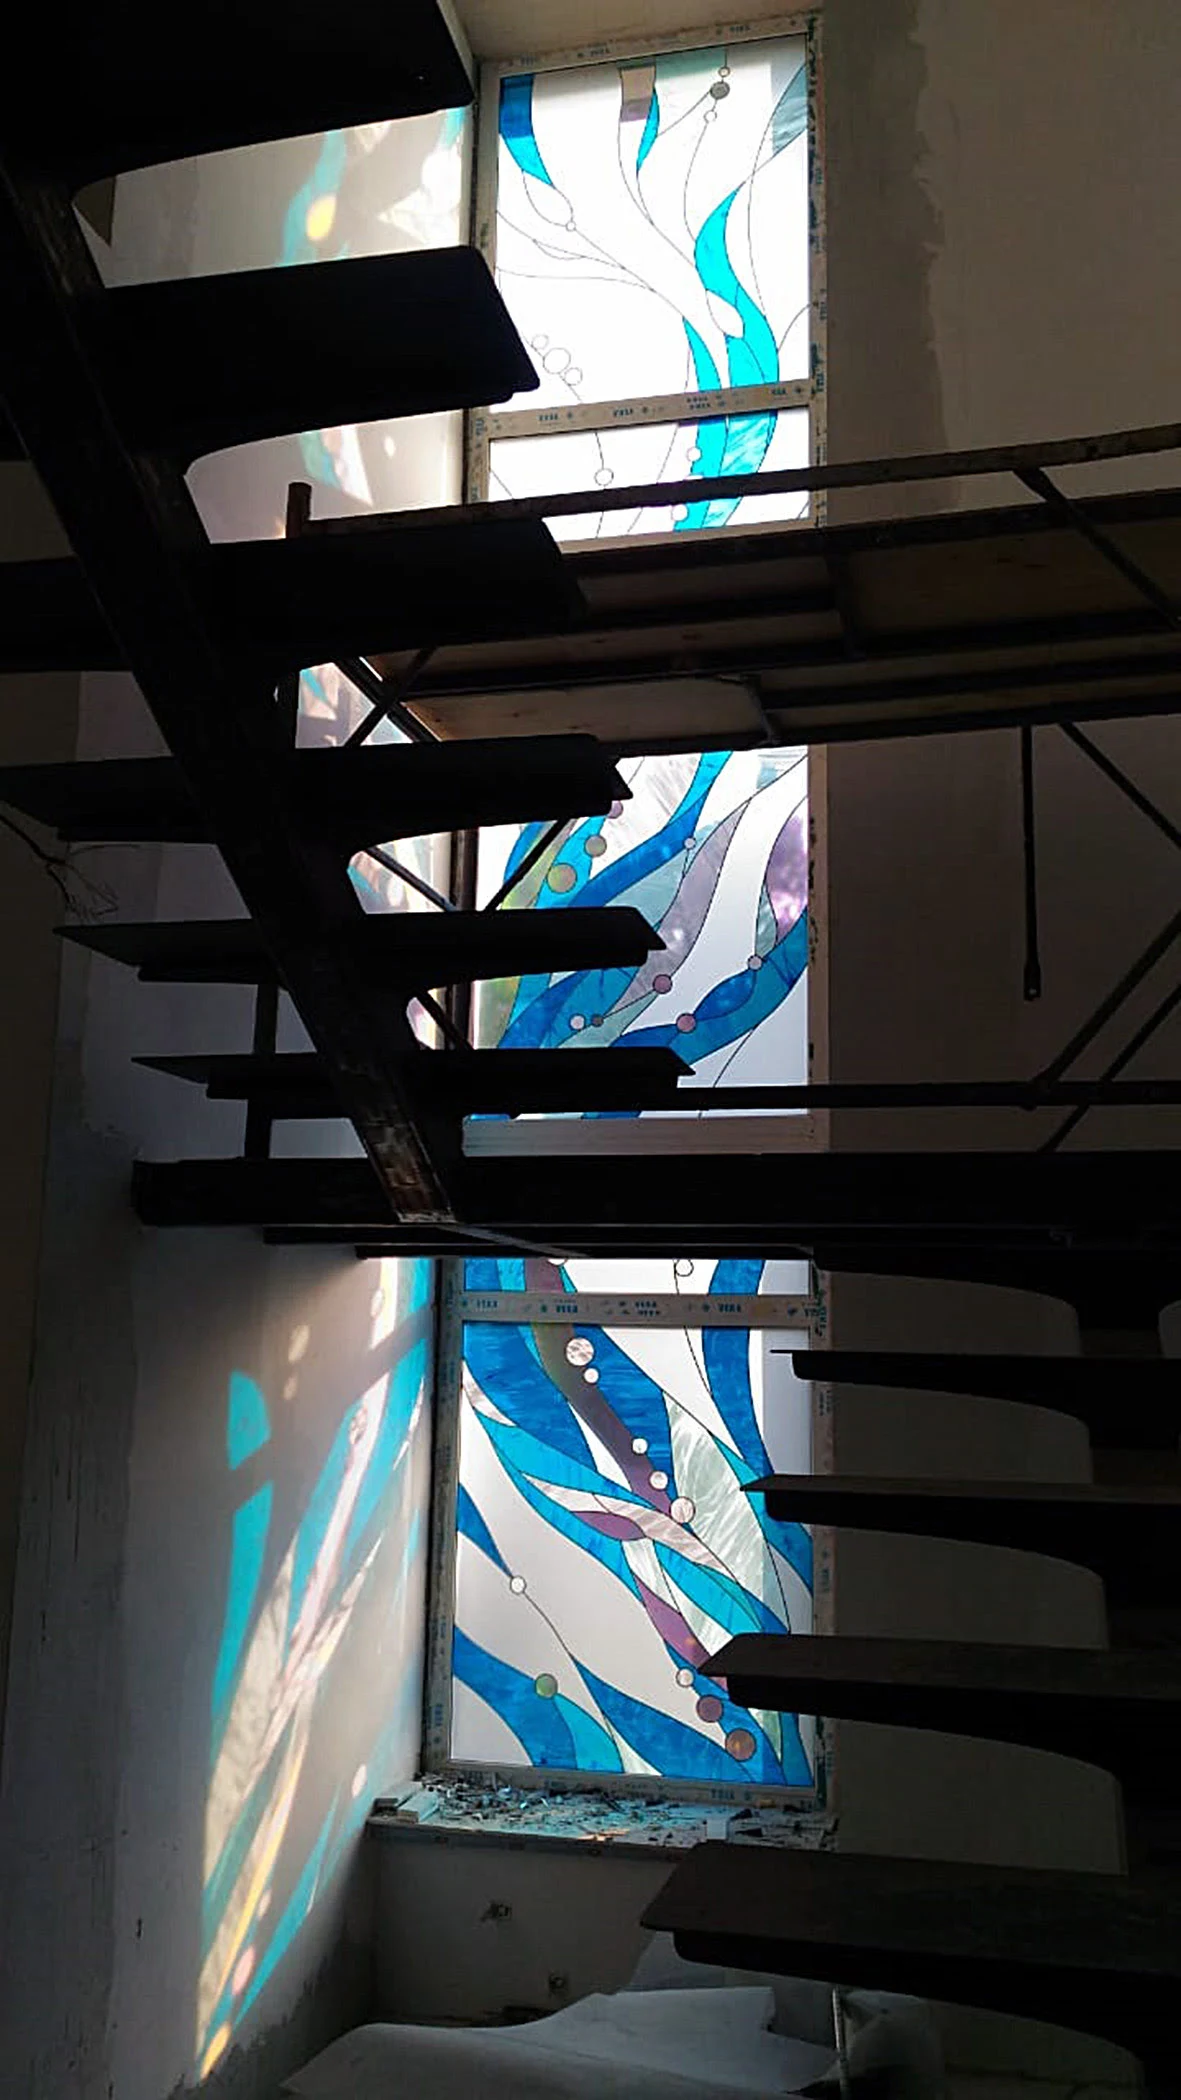 Витражное окно с абстрактным сюжетом "Ультрамарин", фото после установки стеклопакетов в окна